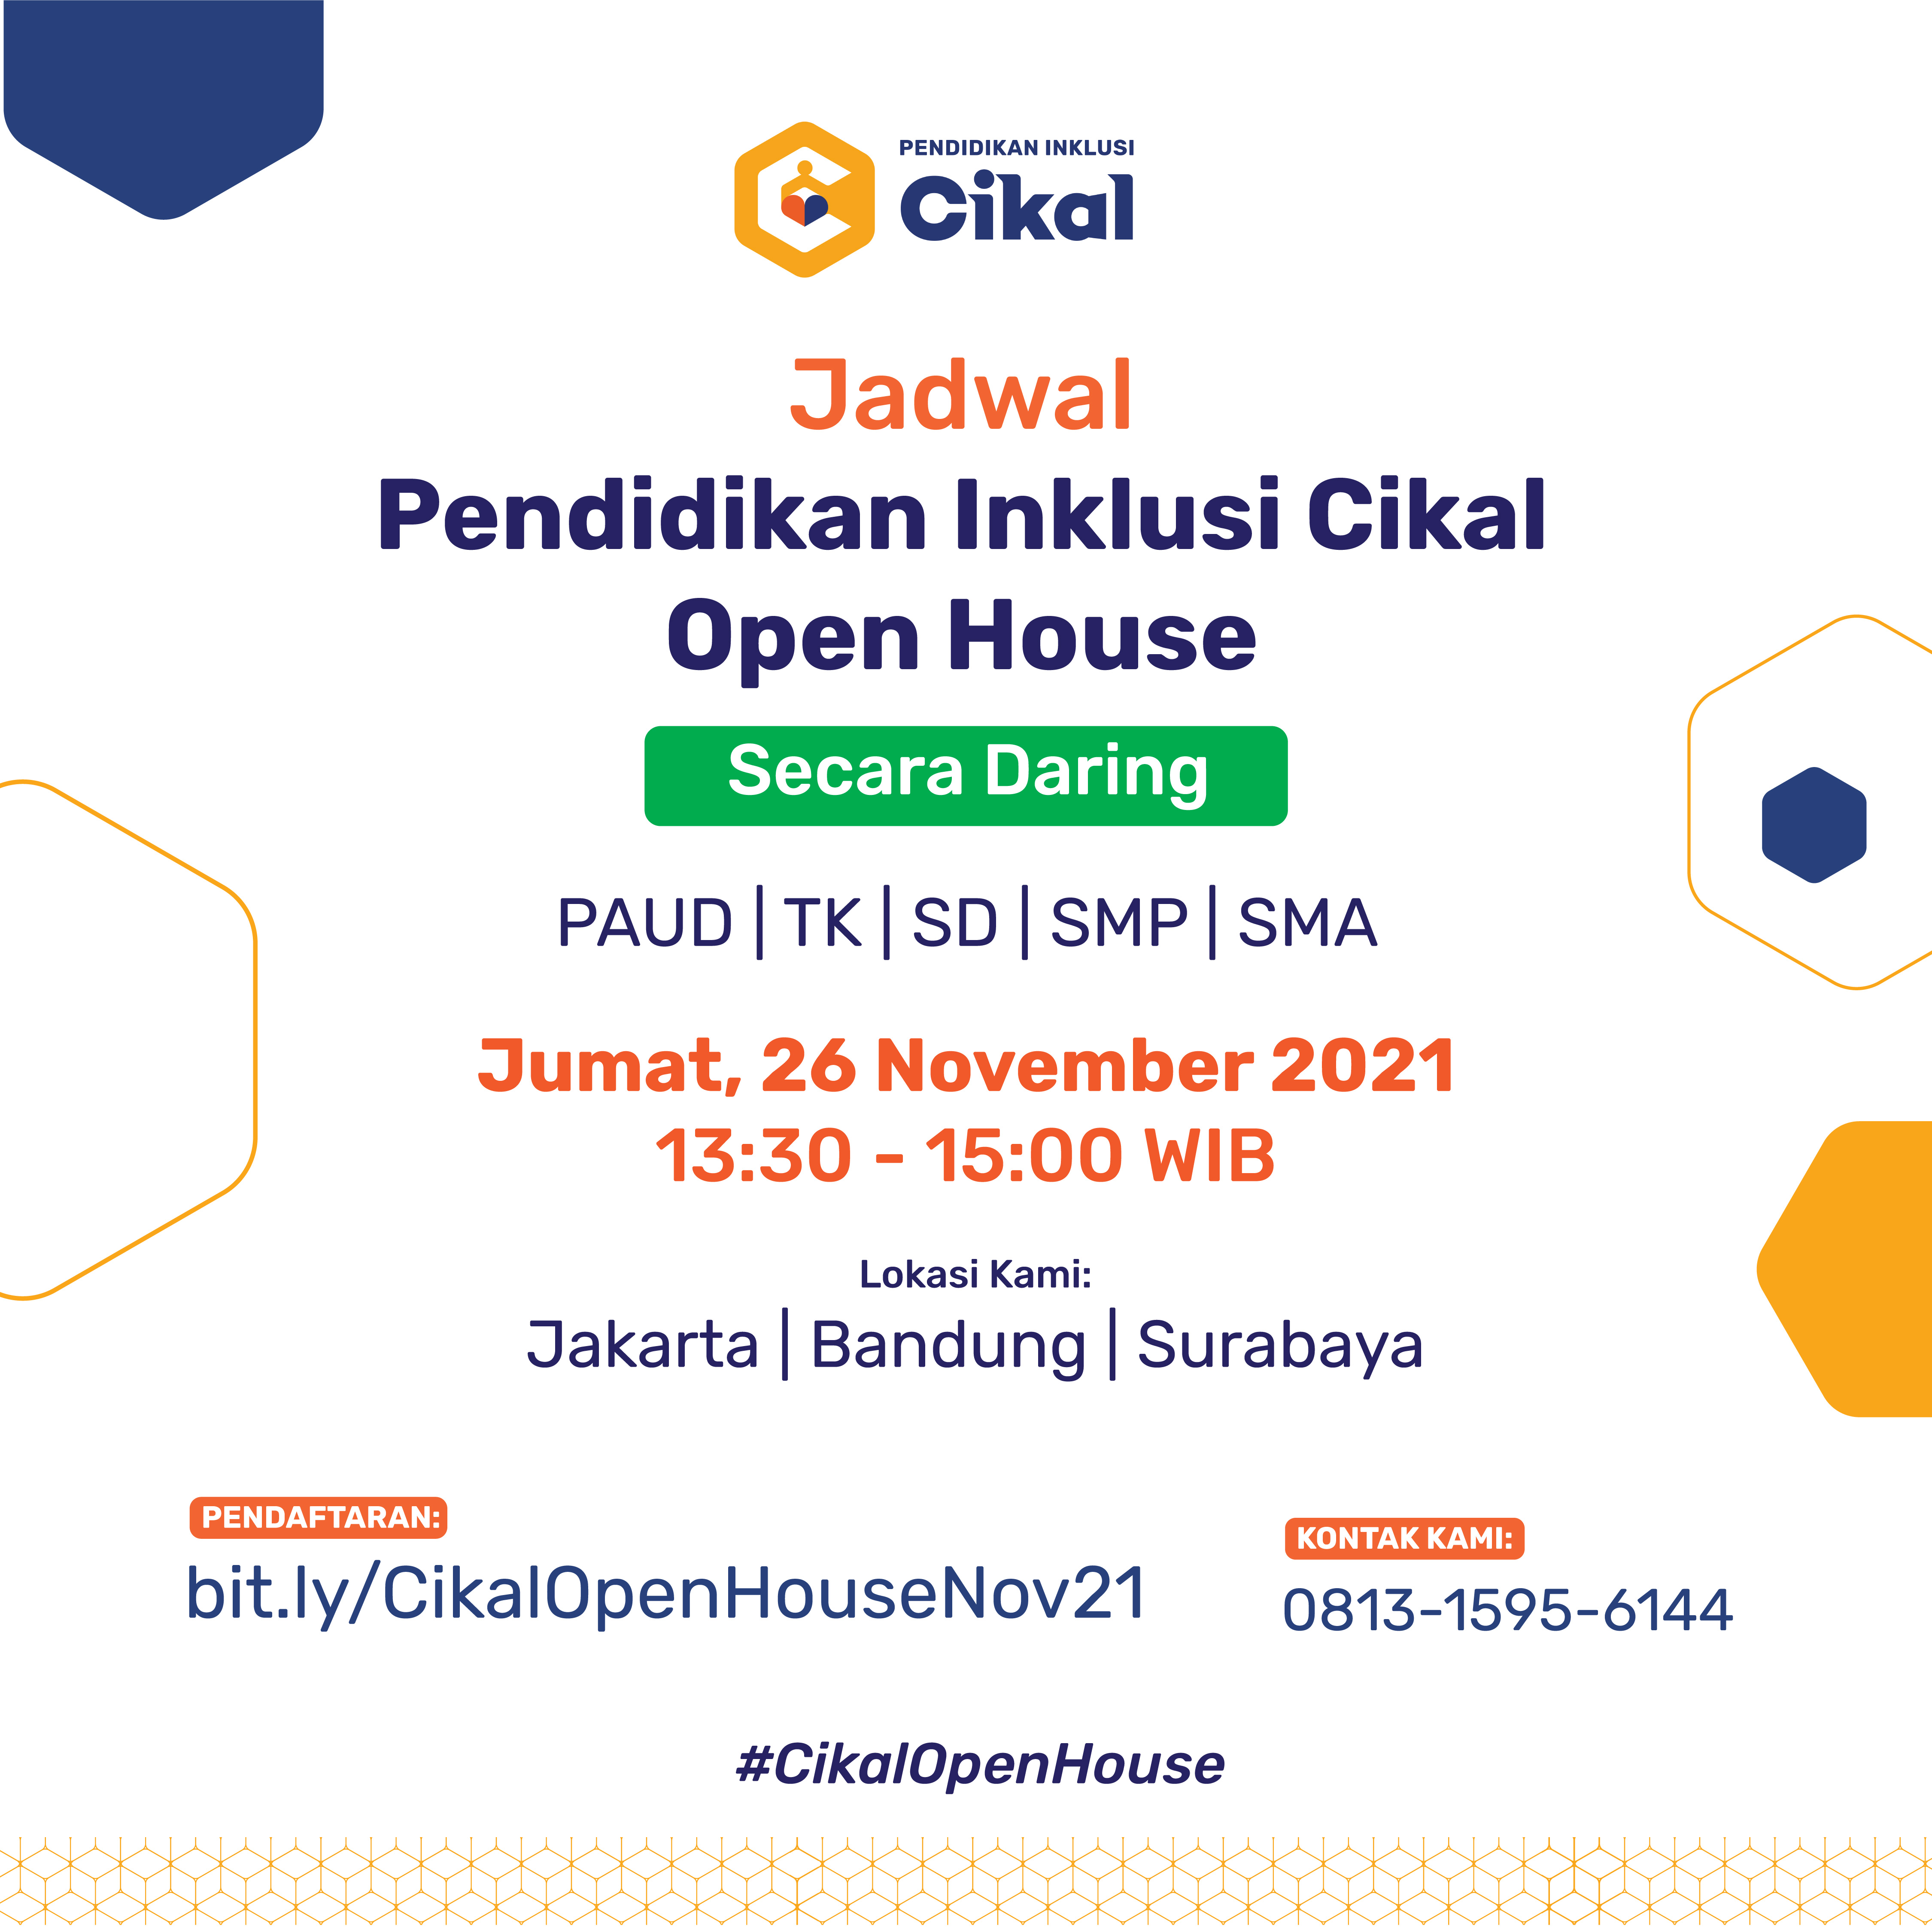 Open House Virtual Pendidikan Inklusi Cikal (Jakarta, Bandung, Surabaya)